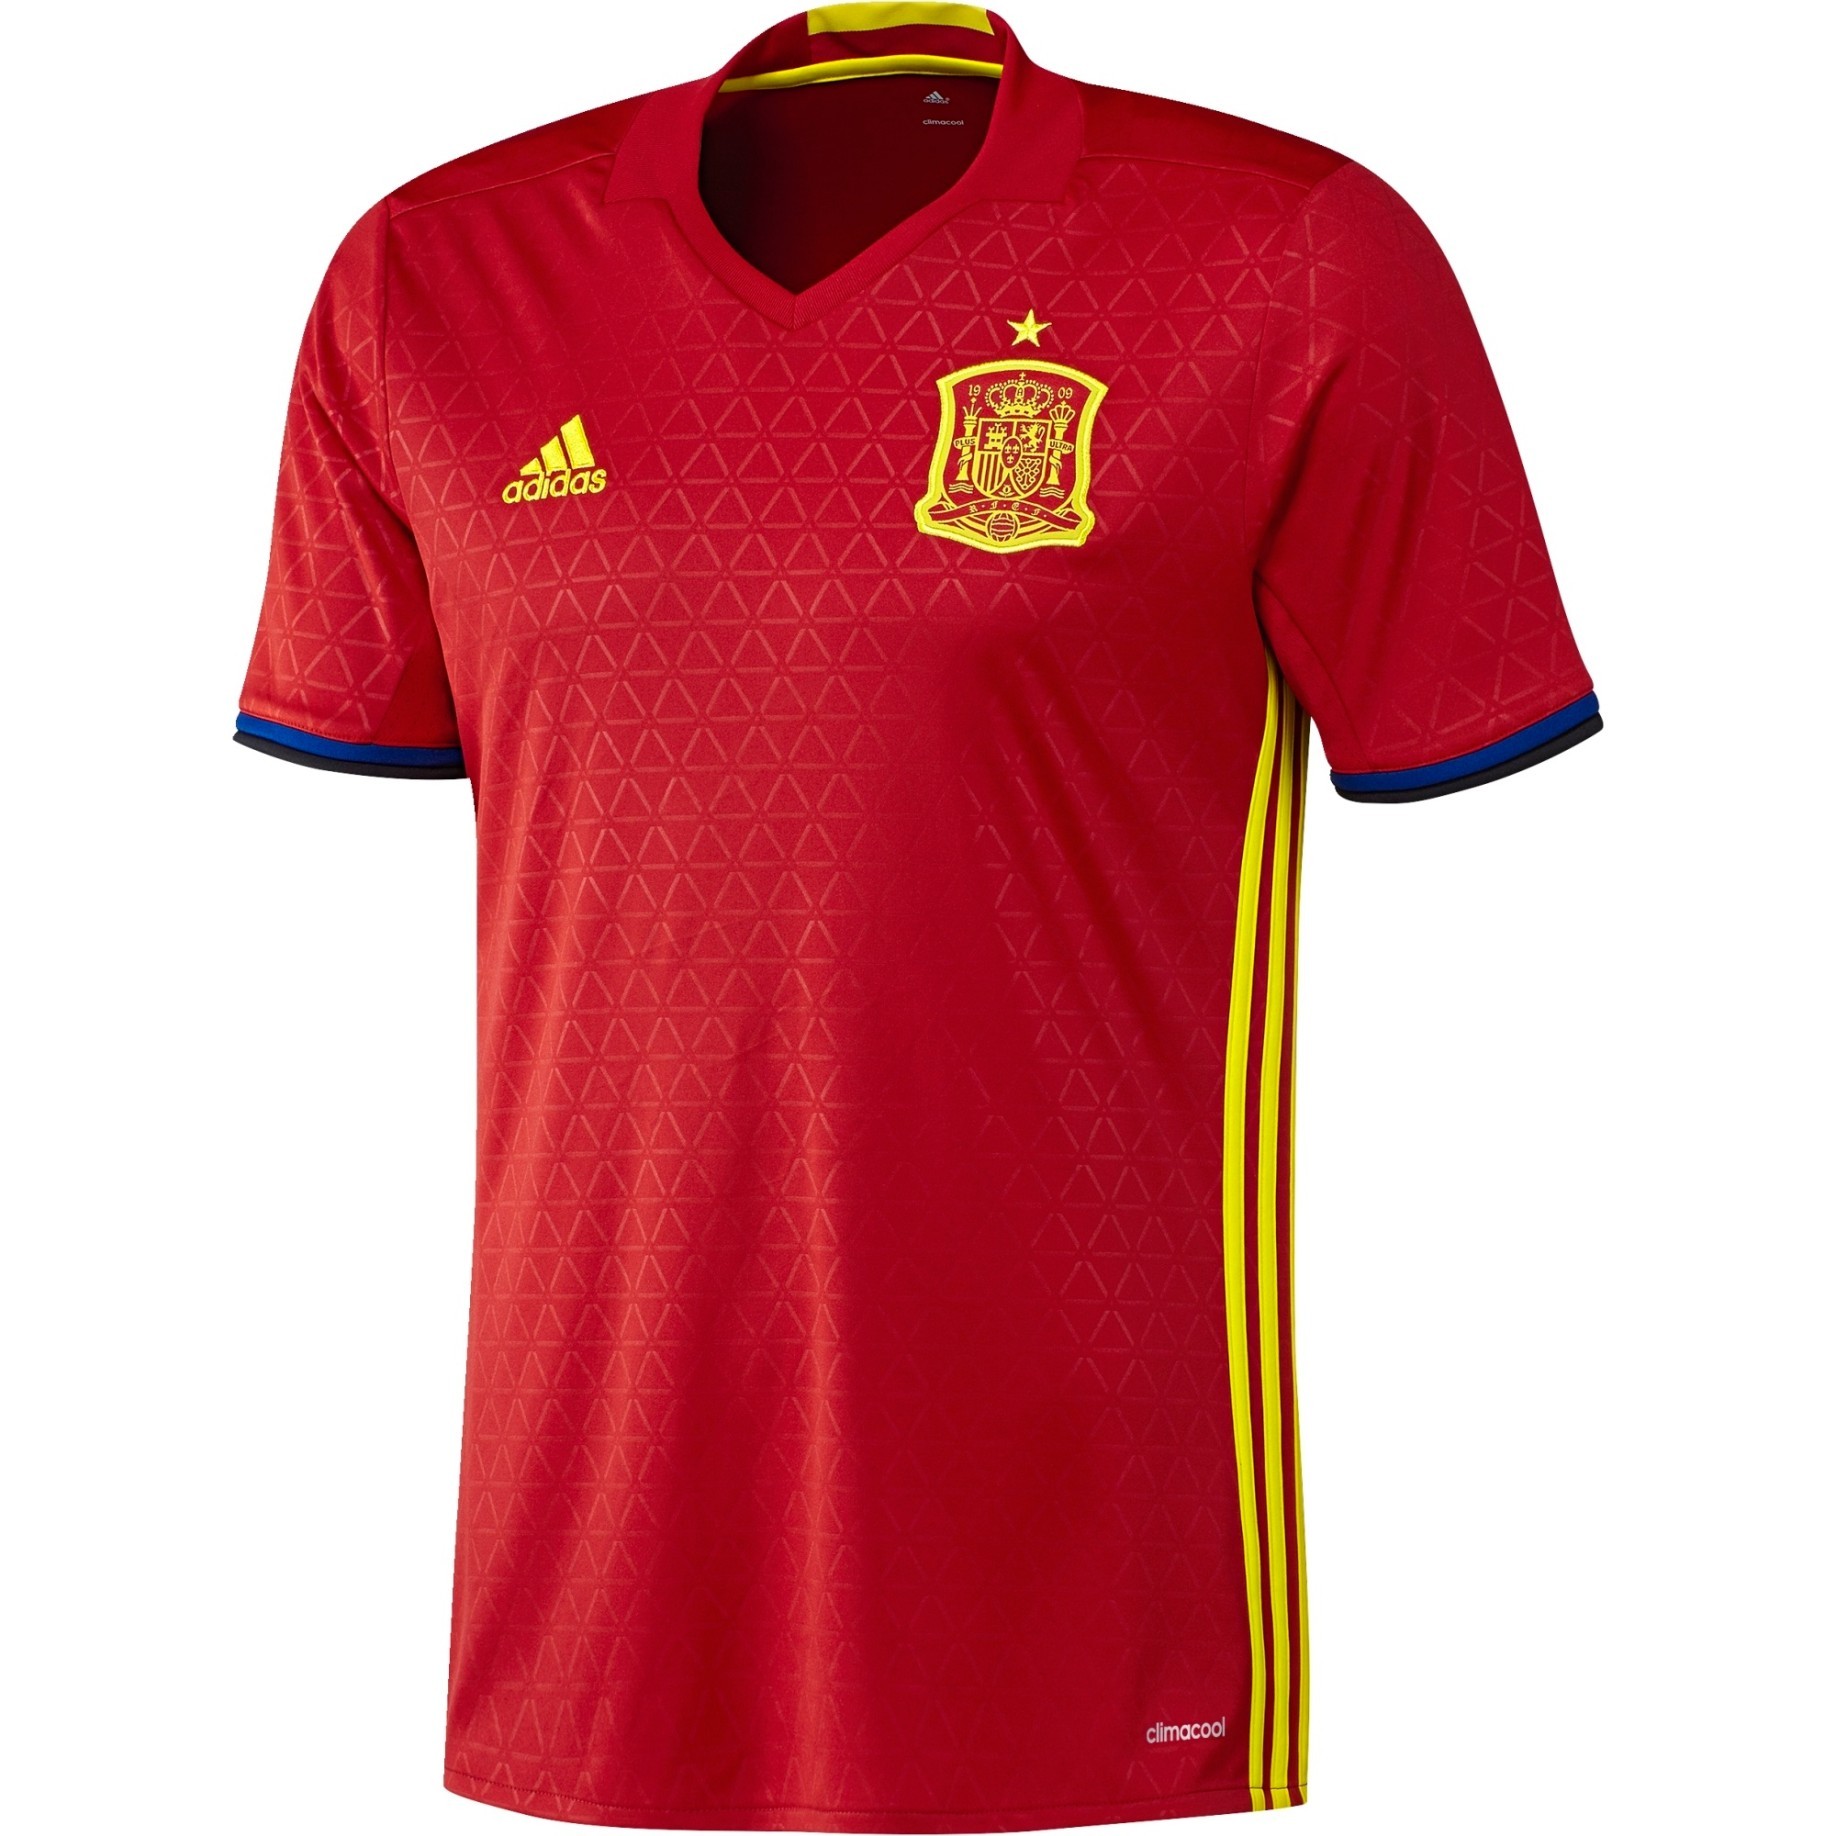 spain euro 2016 jersey